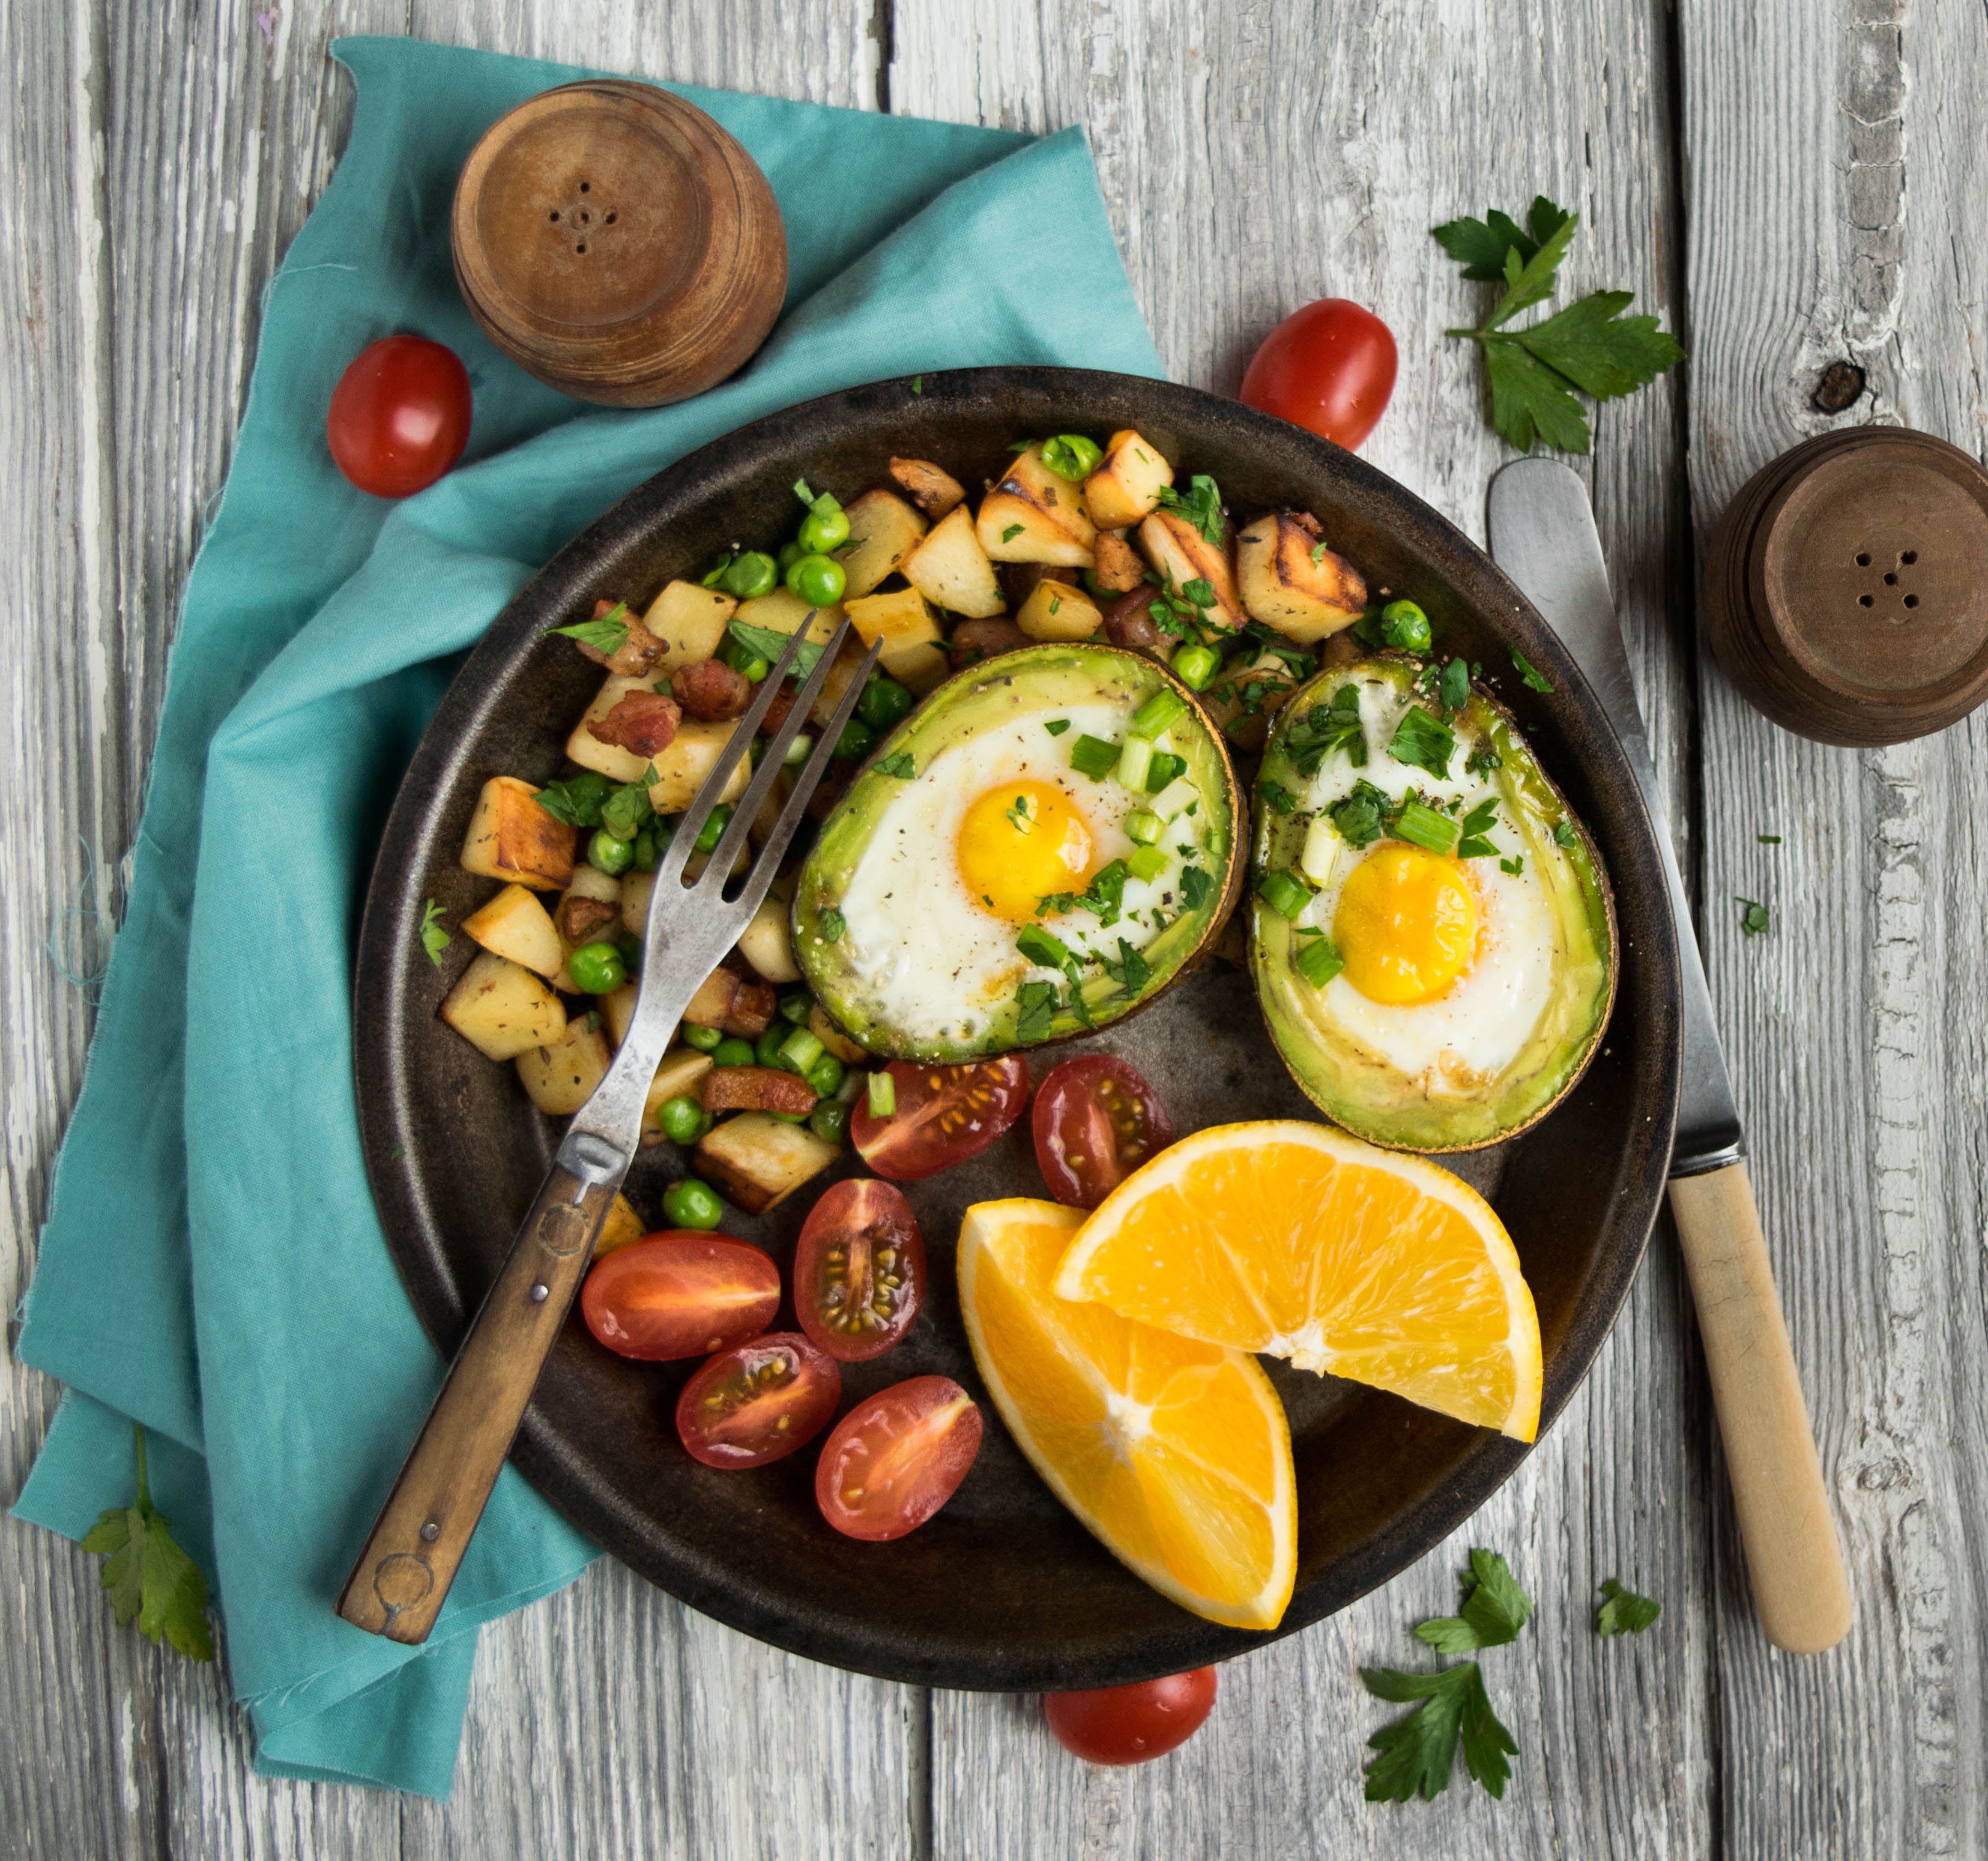 Блюдо яйцо овощи крупа. Яичница с авокадо на завтрак. ПП завтрак с авокадо и яйцом. Глазунья с авокадо. Красивые блюда.